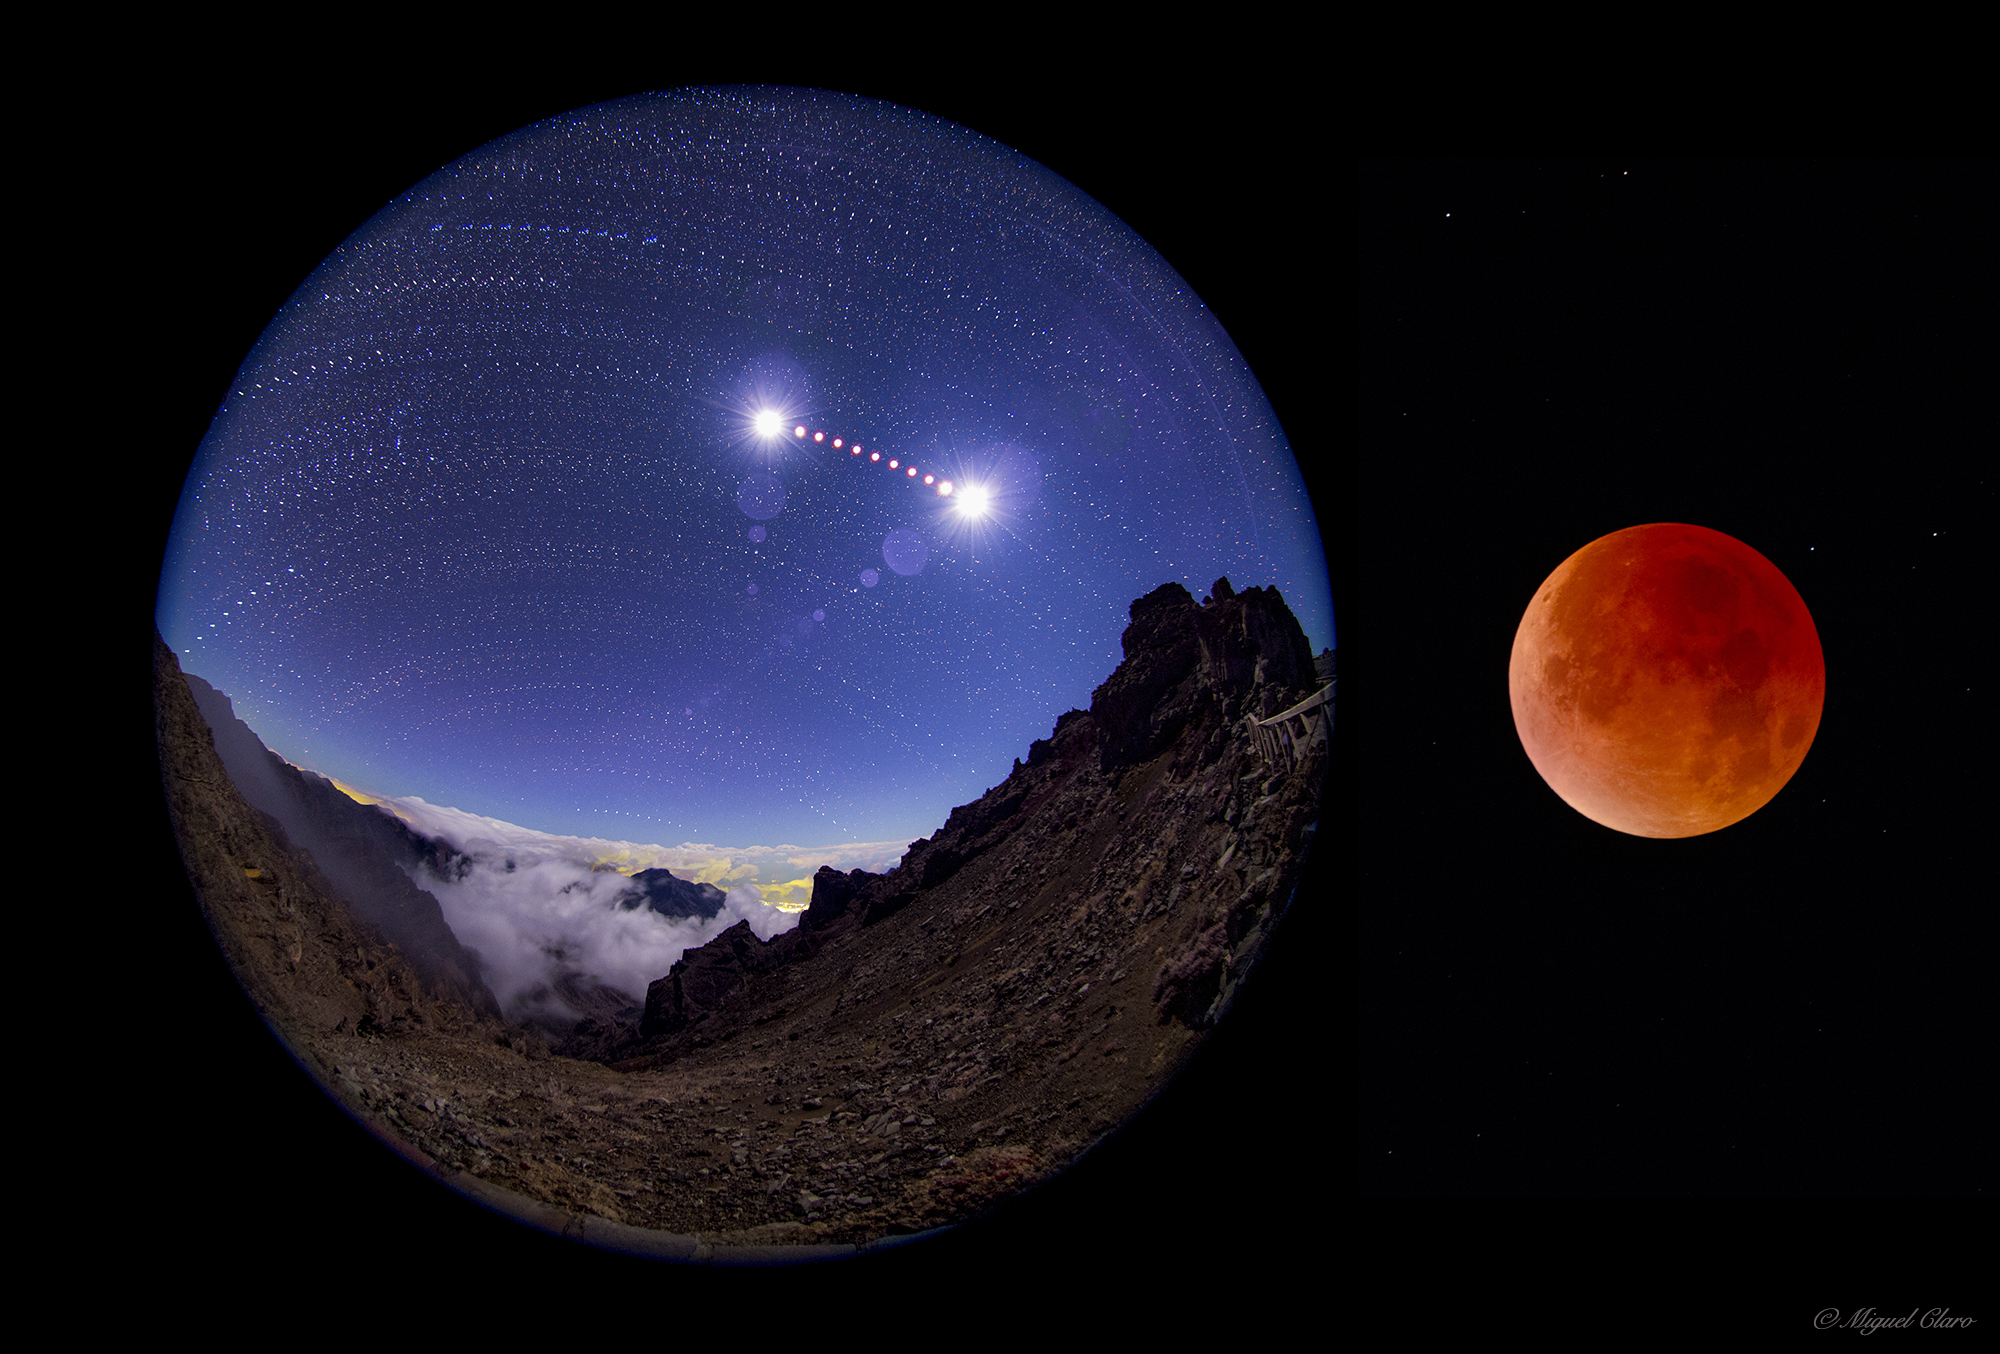 Eclipse de Lune dans le ciel de La Palma